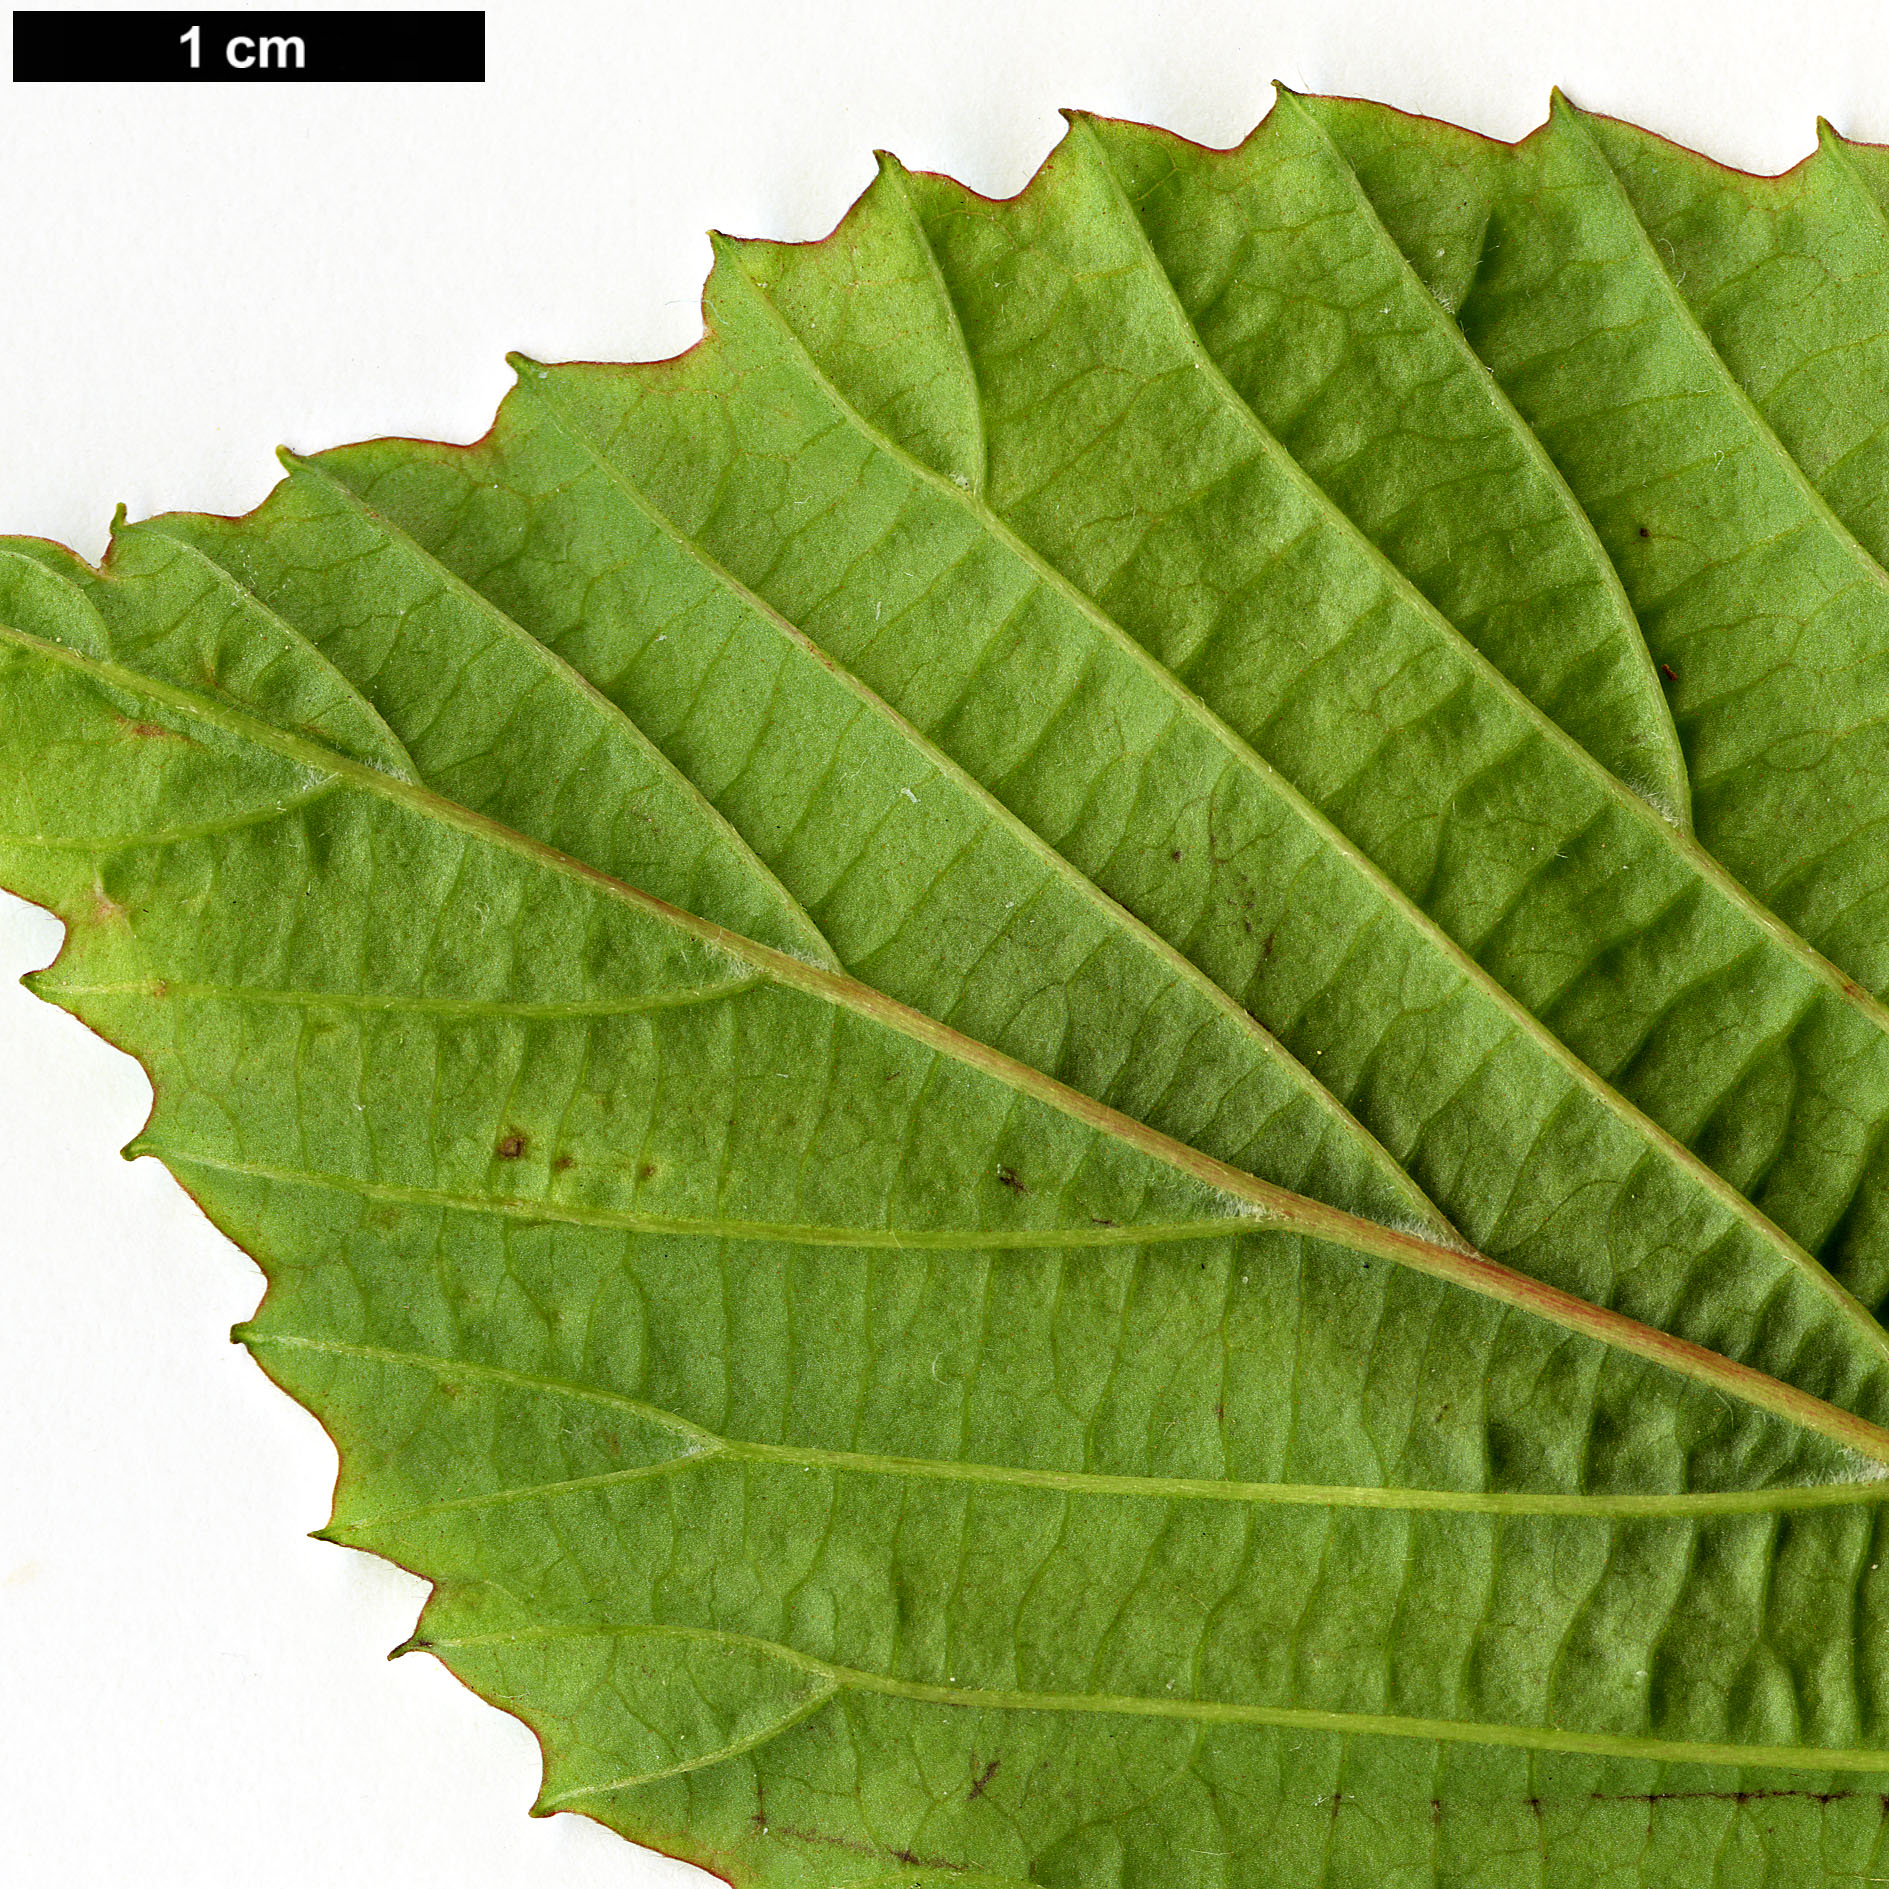 High resolution image: Family: Adoxaceae - Genus: Viburnum - Taxon: brachyandrum